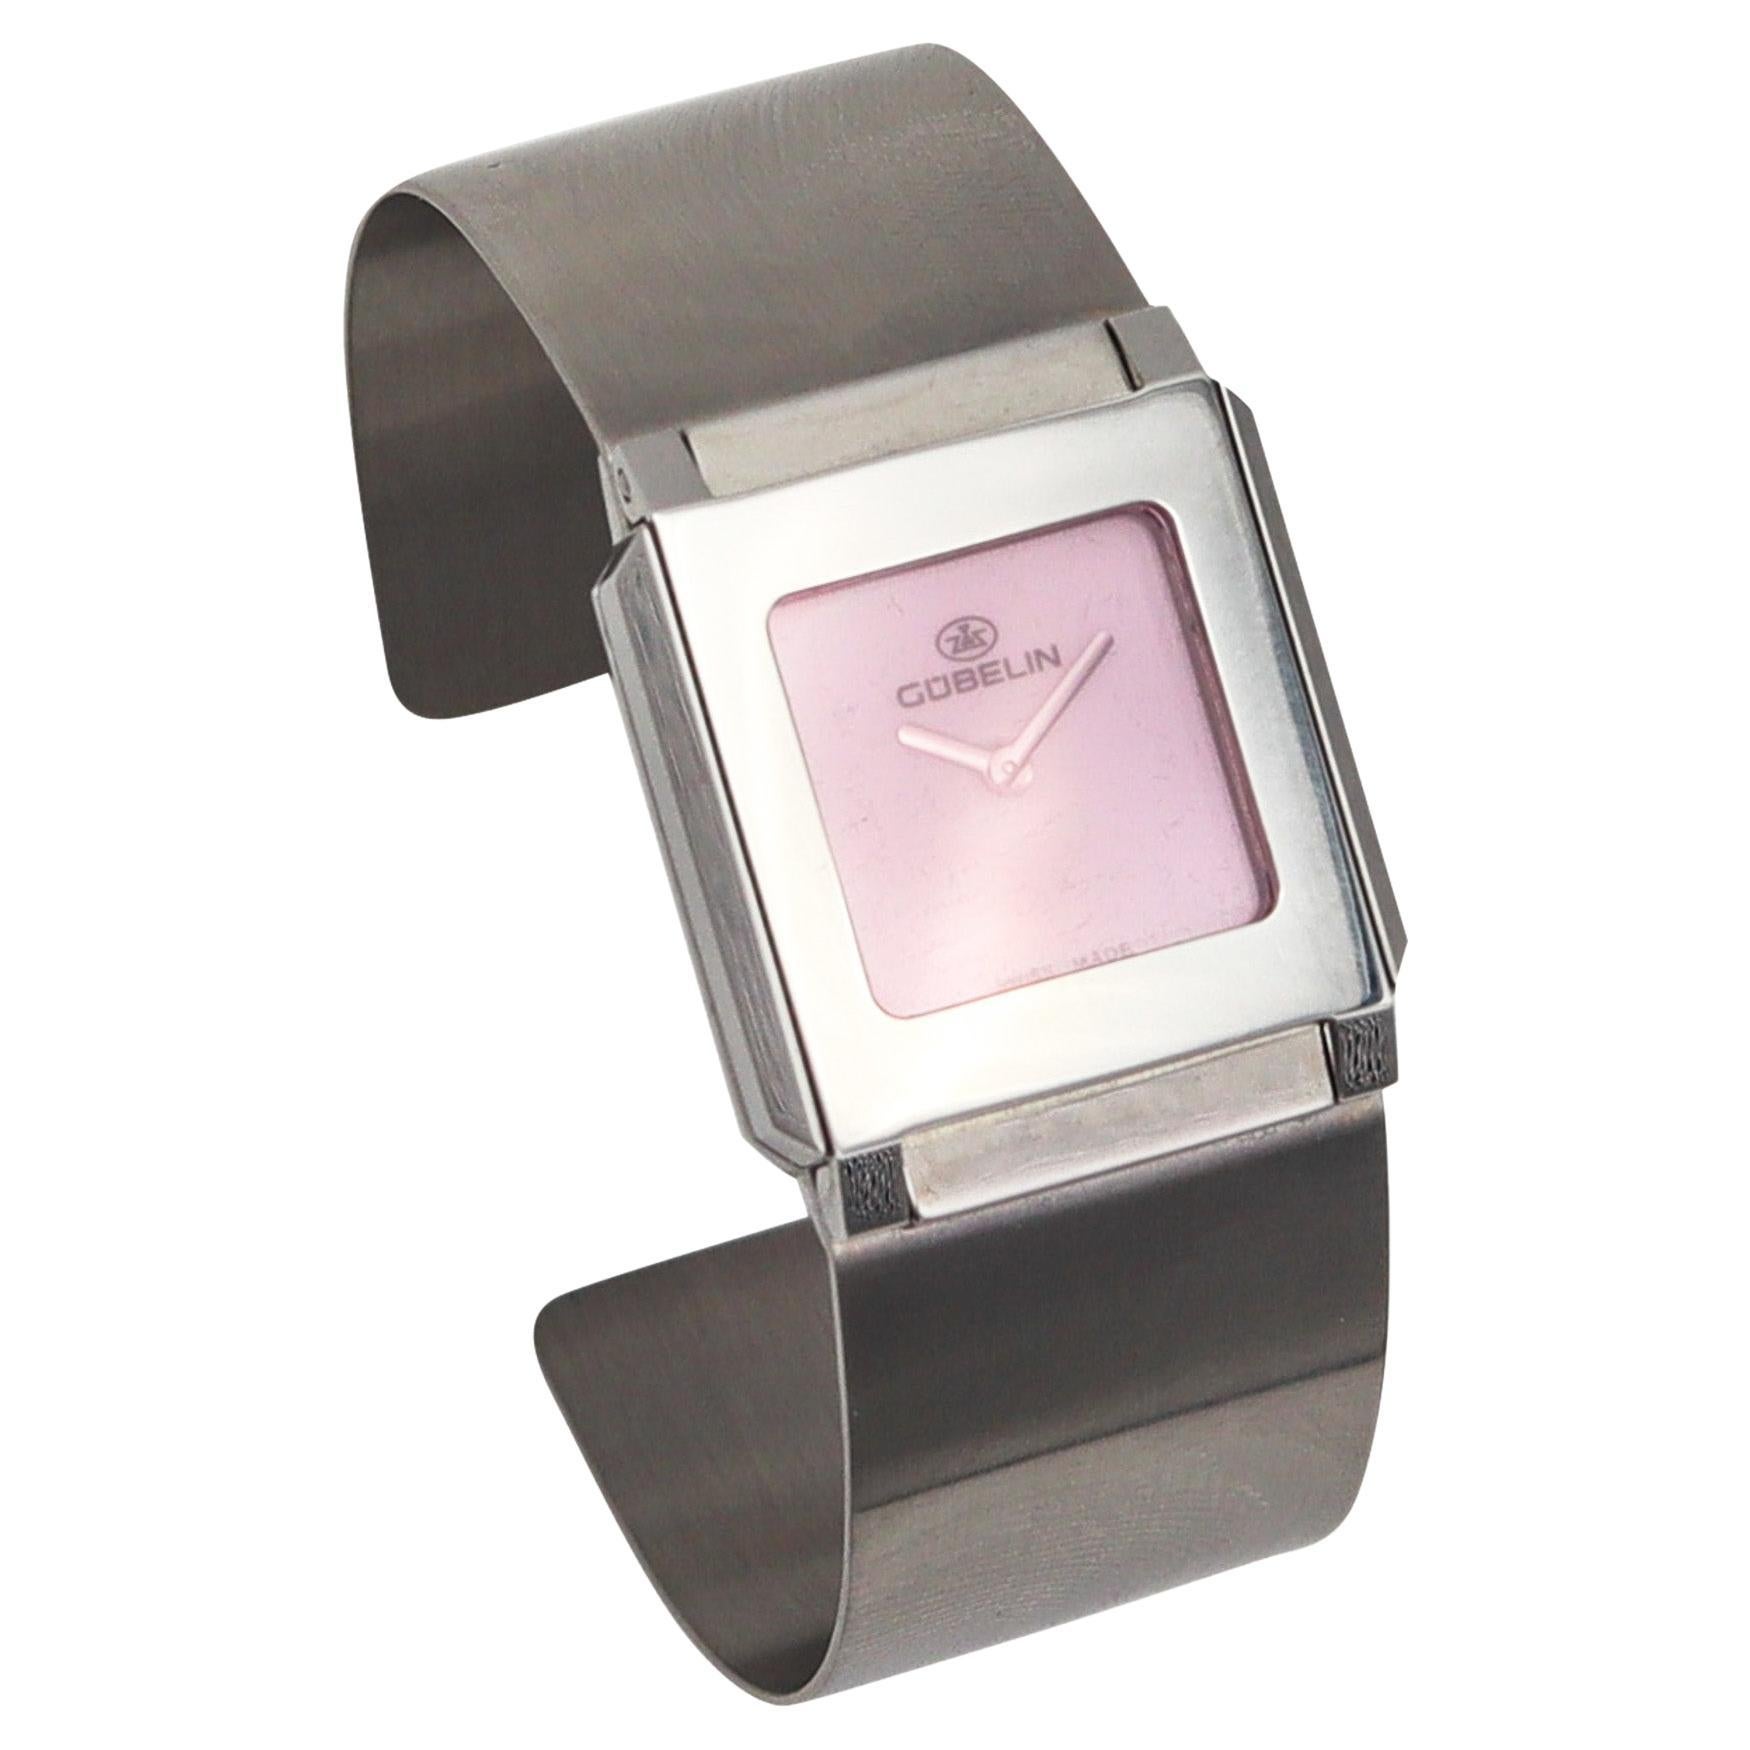 Gubelin Modernist Techno Cuff Bracelet Wrist Watch In Stainless Steel For Sale